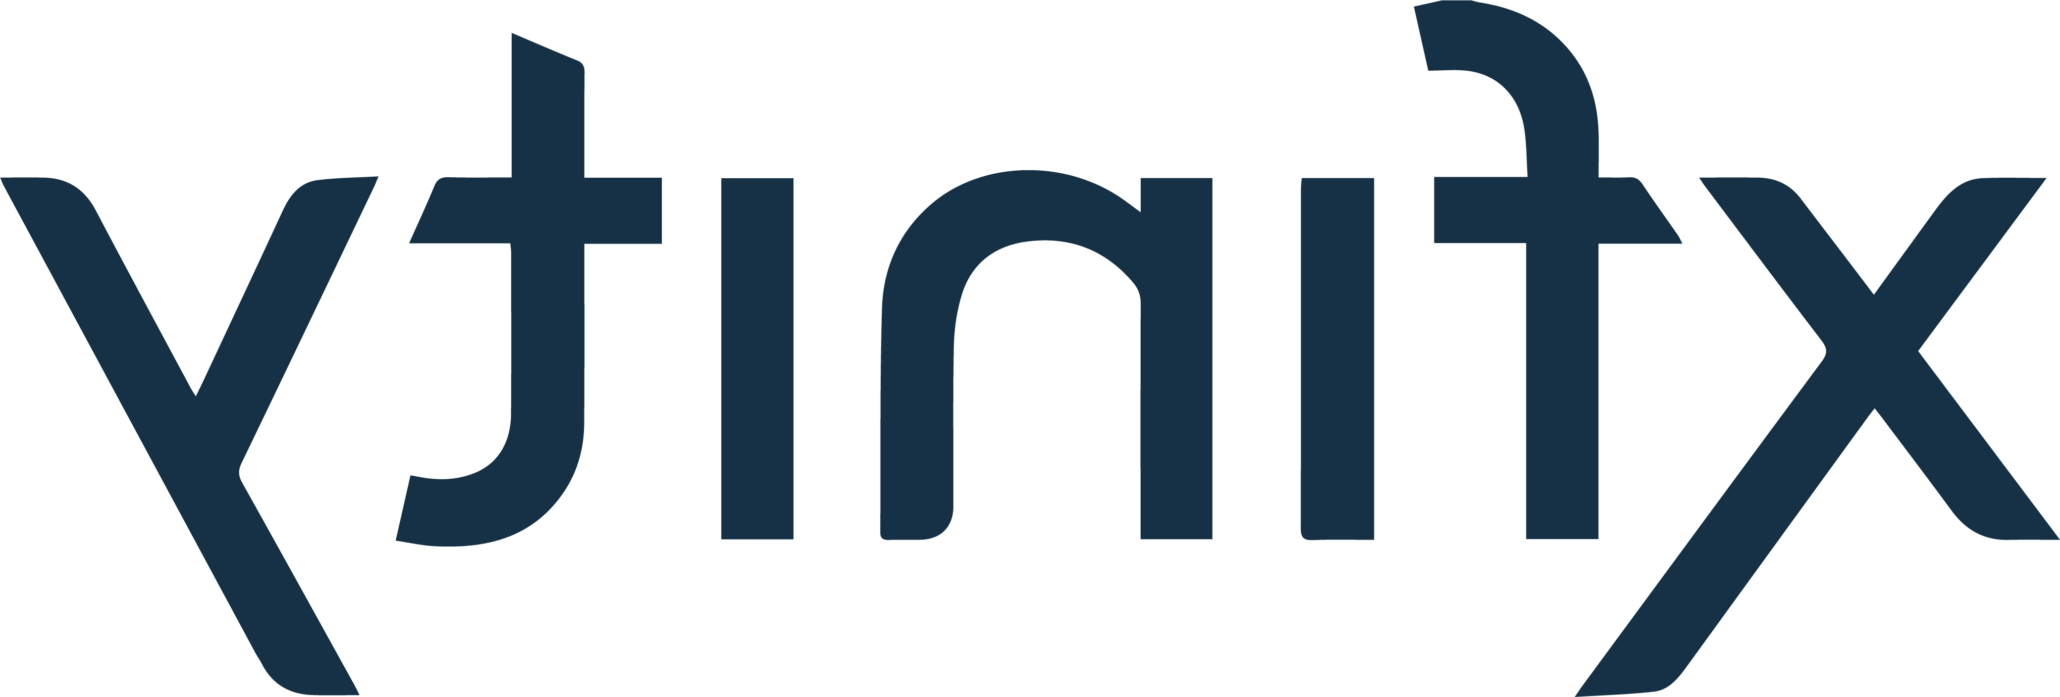 Xfinity客户端logo